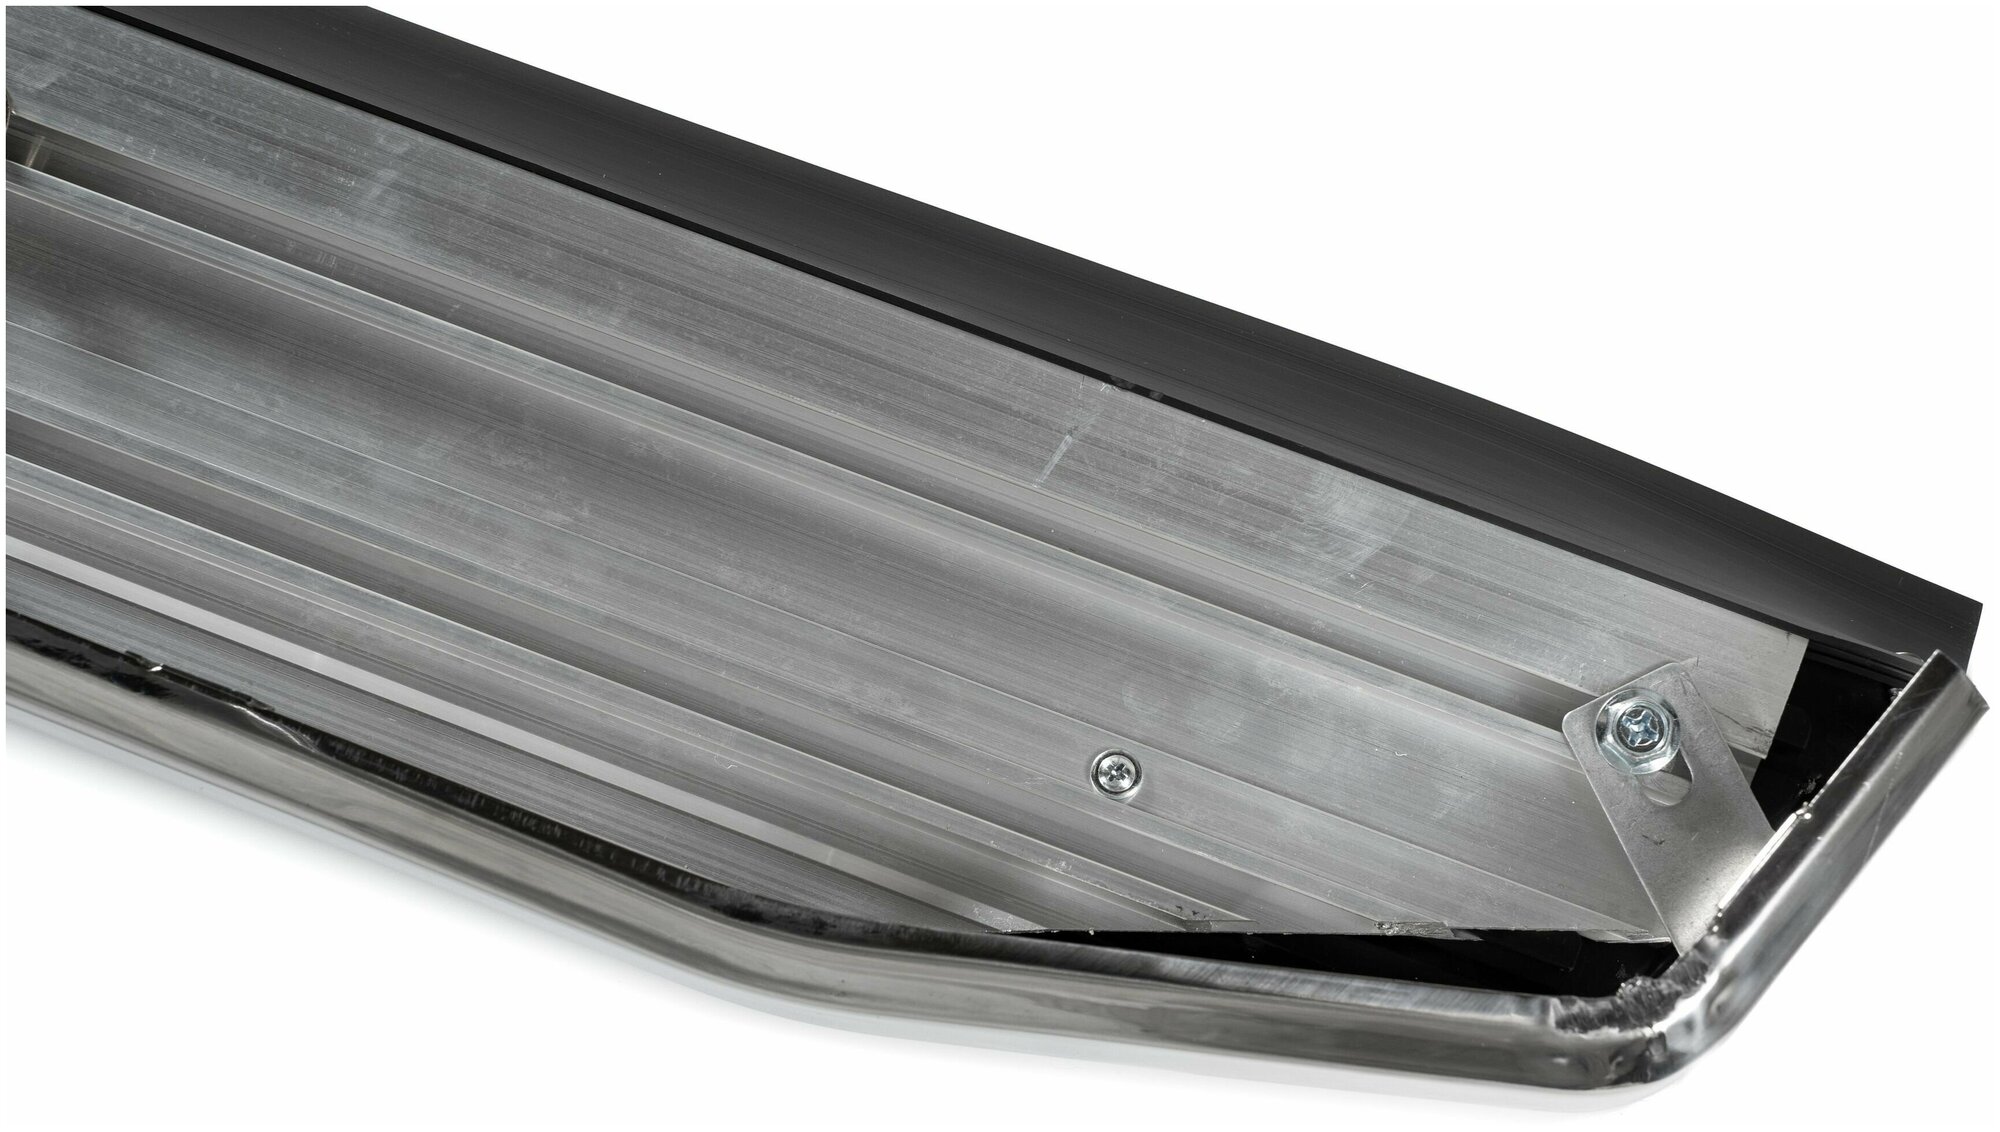 Пороги подножки алюминиевые с кантом из нержавейки для Hyundai Santa Fe (Хендай Санта Фе)2006-2012 с крепежом